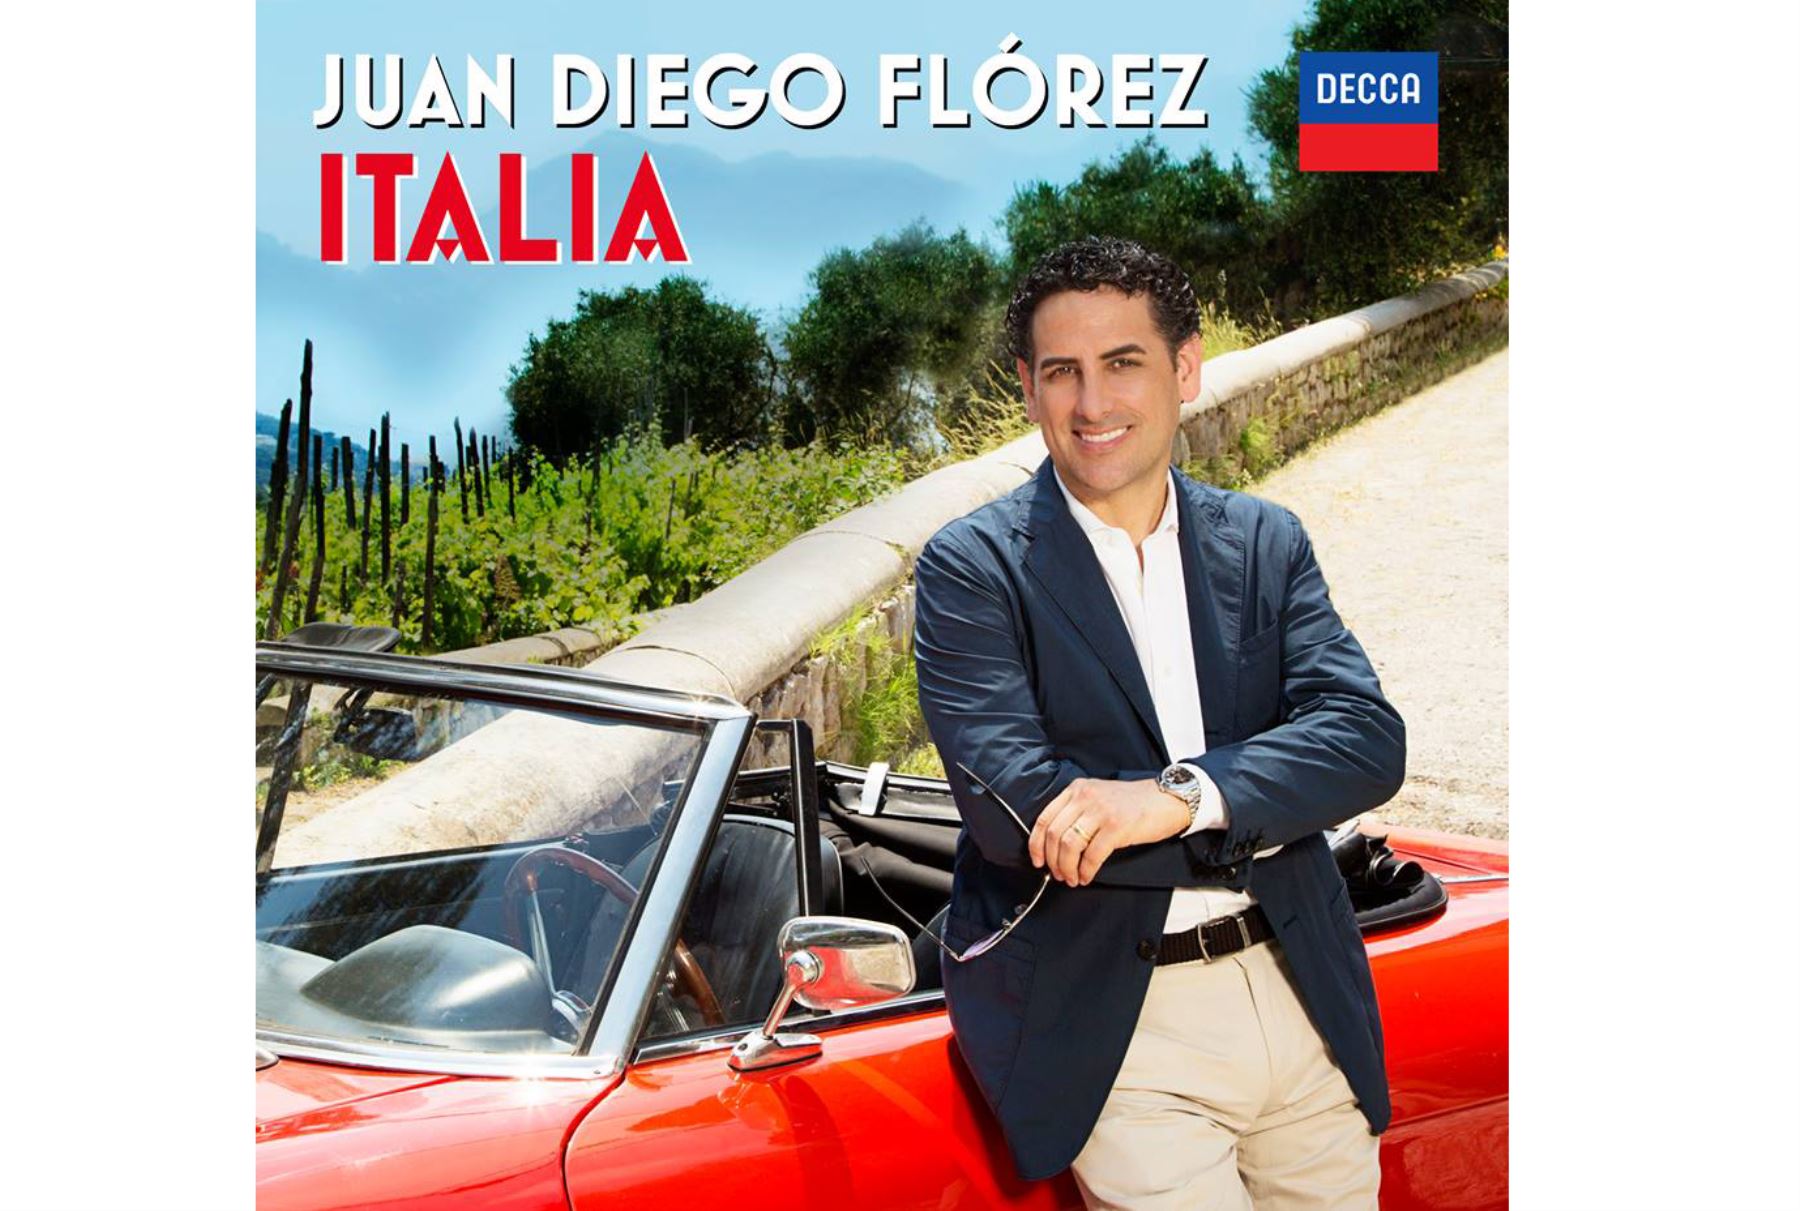 Portada del nuevo disco de Juan Diego Flórez.